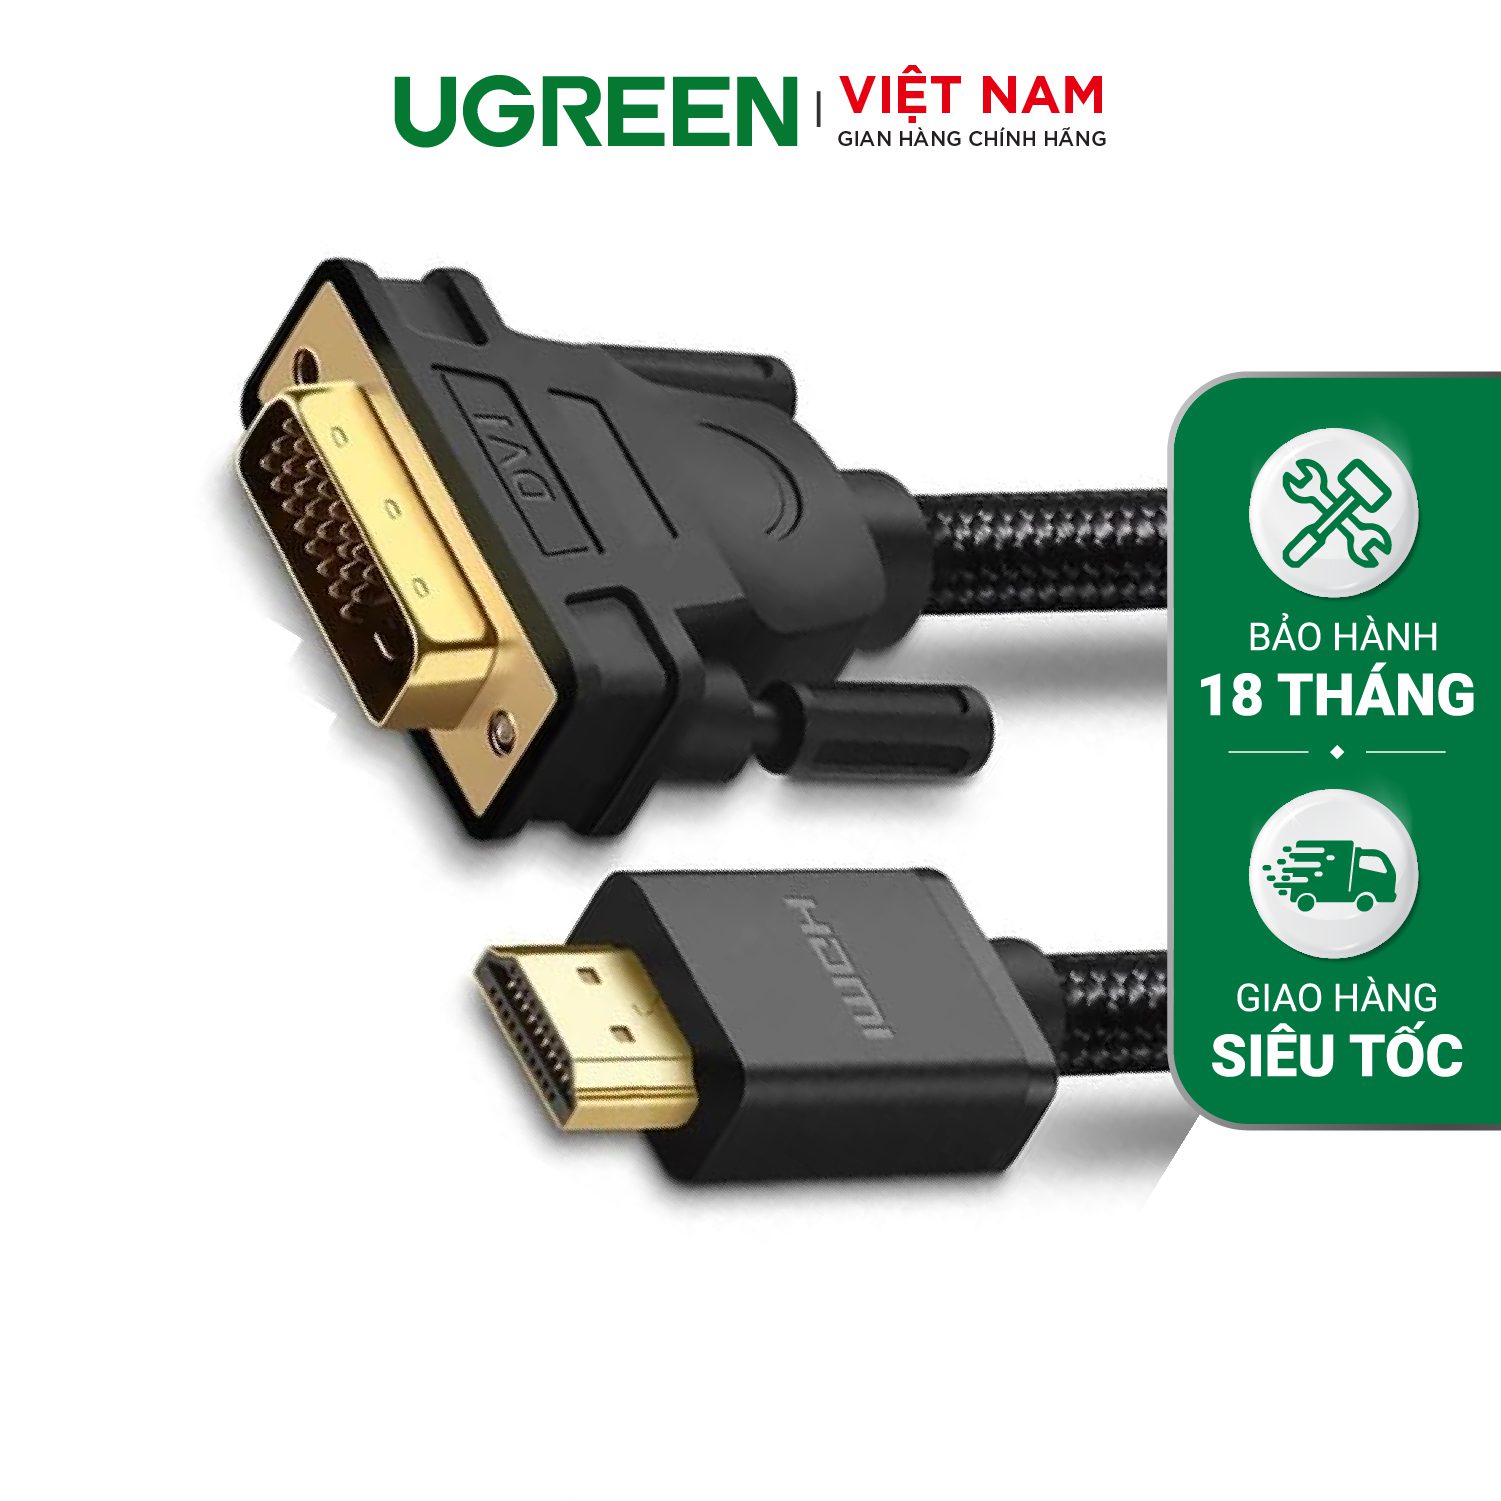 Cáp chuyển HDMI sang DVI (24+1) UGREEN HD133 - Dây bện nylon chống rối, bề mặt mạ vàng 24K – Ugreen Việt Nam